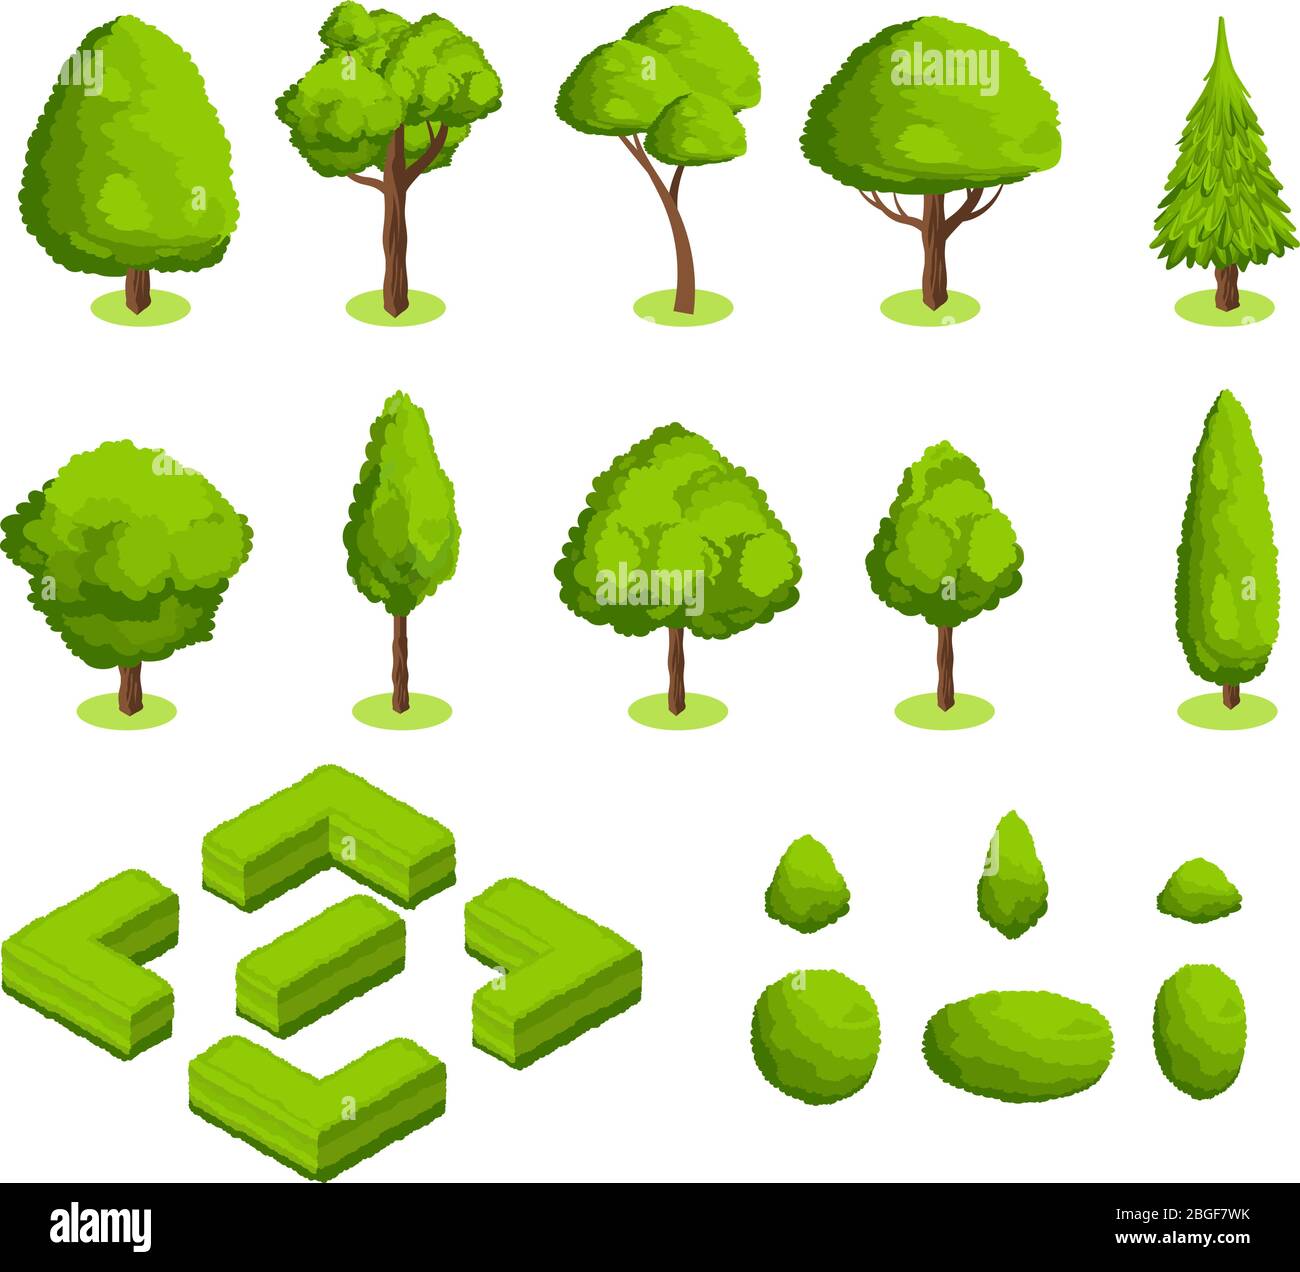 Parque vectorial 3d isométrico y árboles y arbustos de jardín. Colección de plantas de bosque verde. Ilustración del entorno del árbol verde y el casquillo Ilustración del Vector